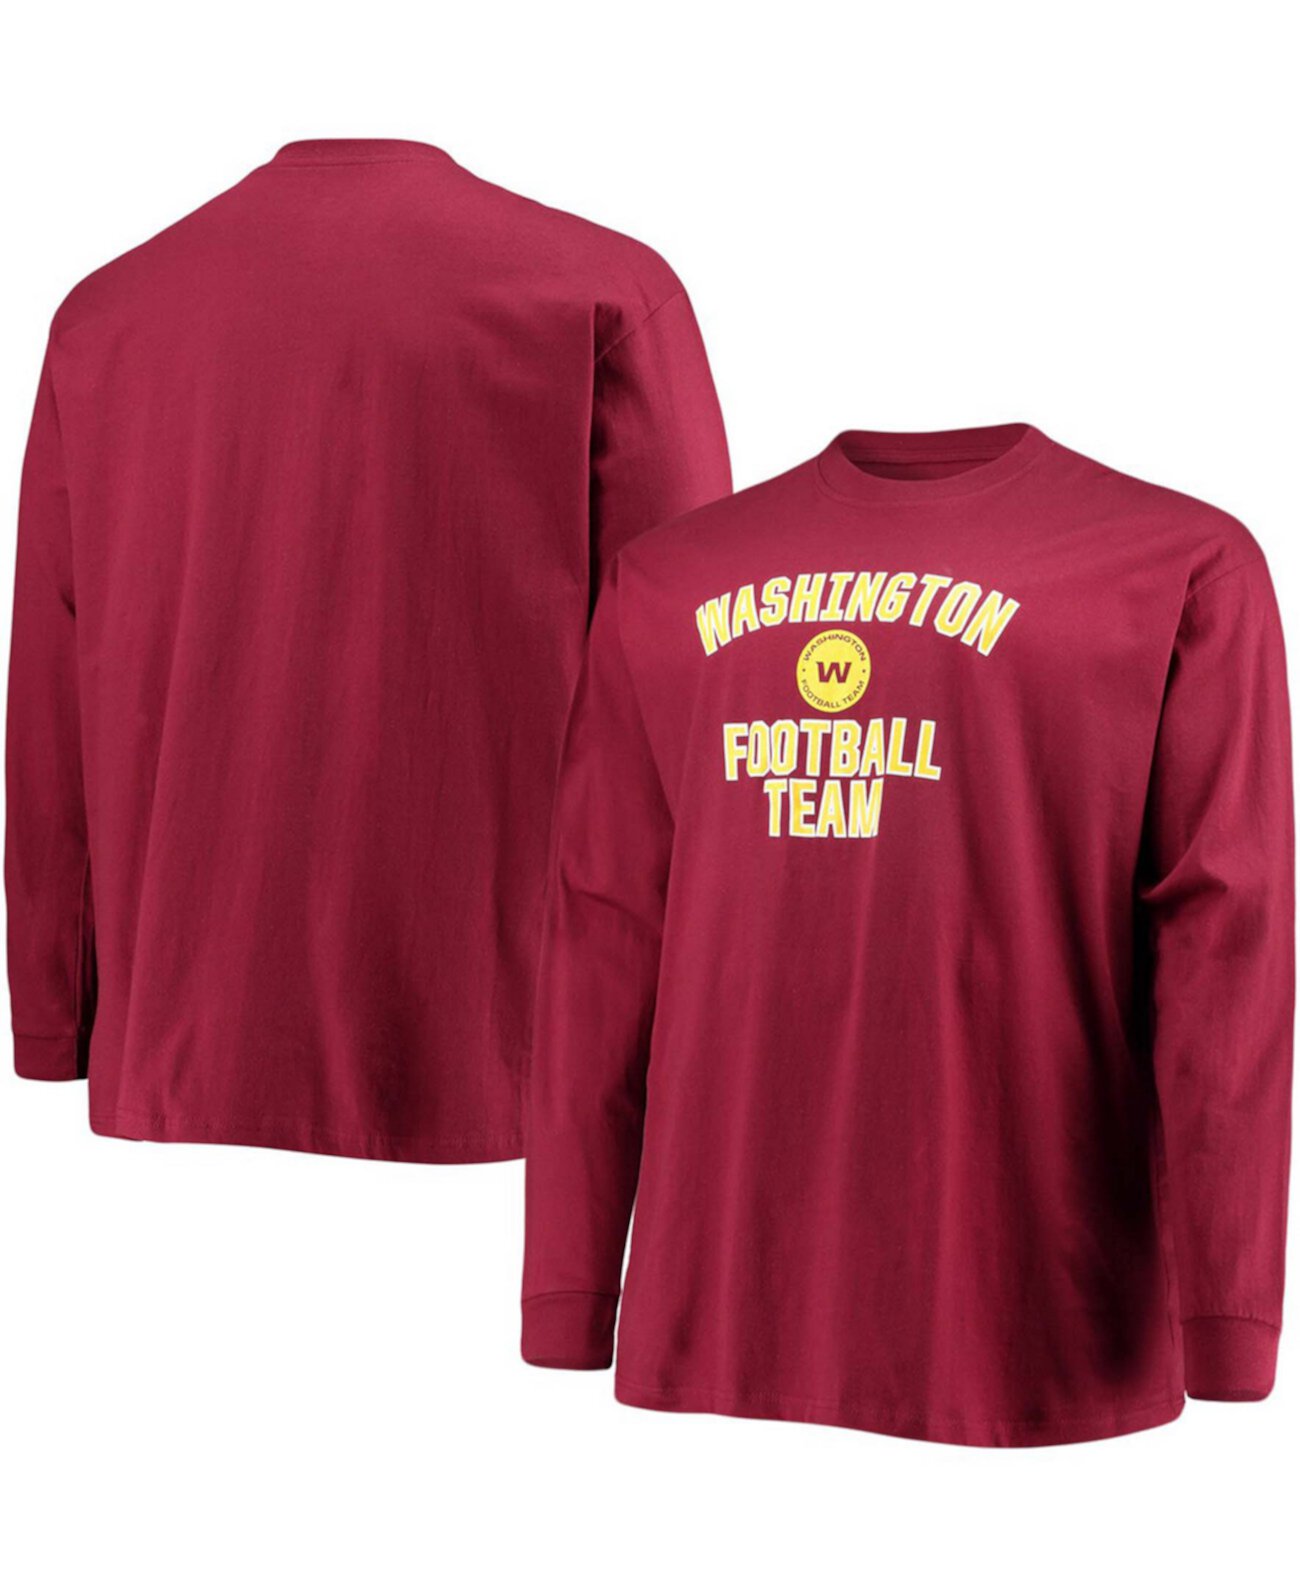 Мужская бордовая футболка с длинным рукавом в стиле «большой и высокий» с логотипом Washington Football Team Profile